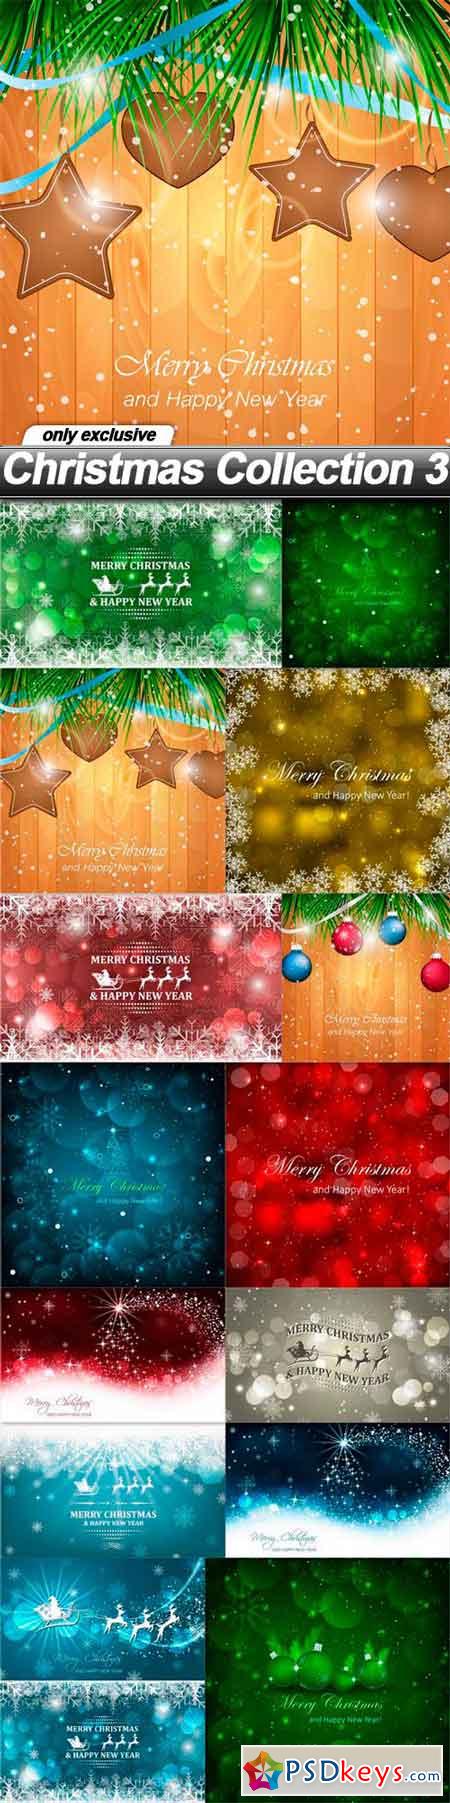 Christmas Collection 3 - 15 EPS